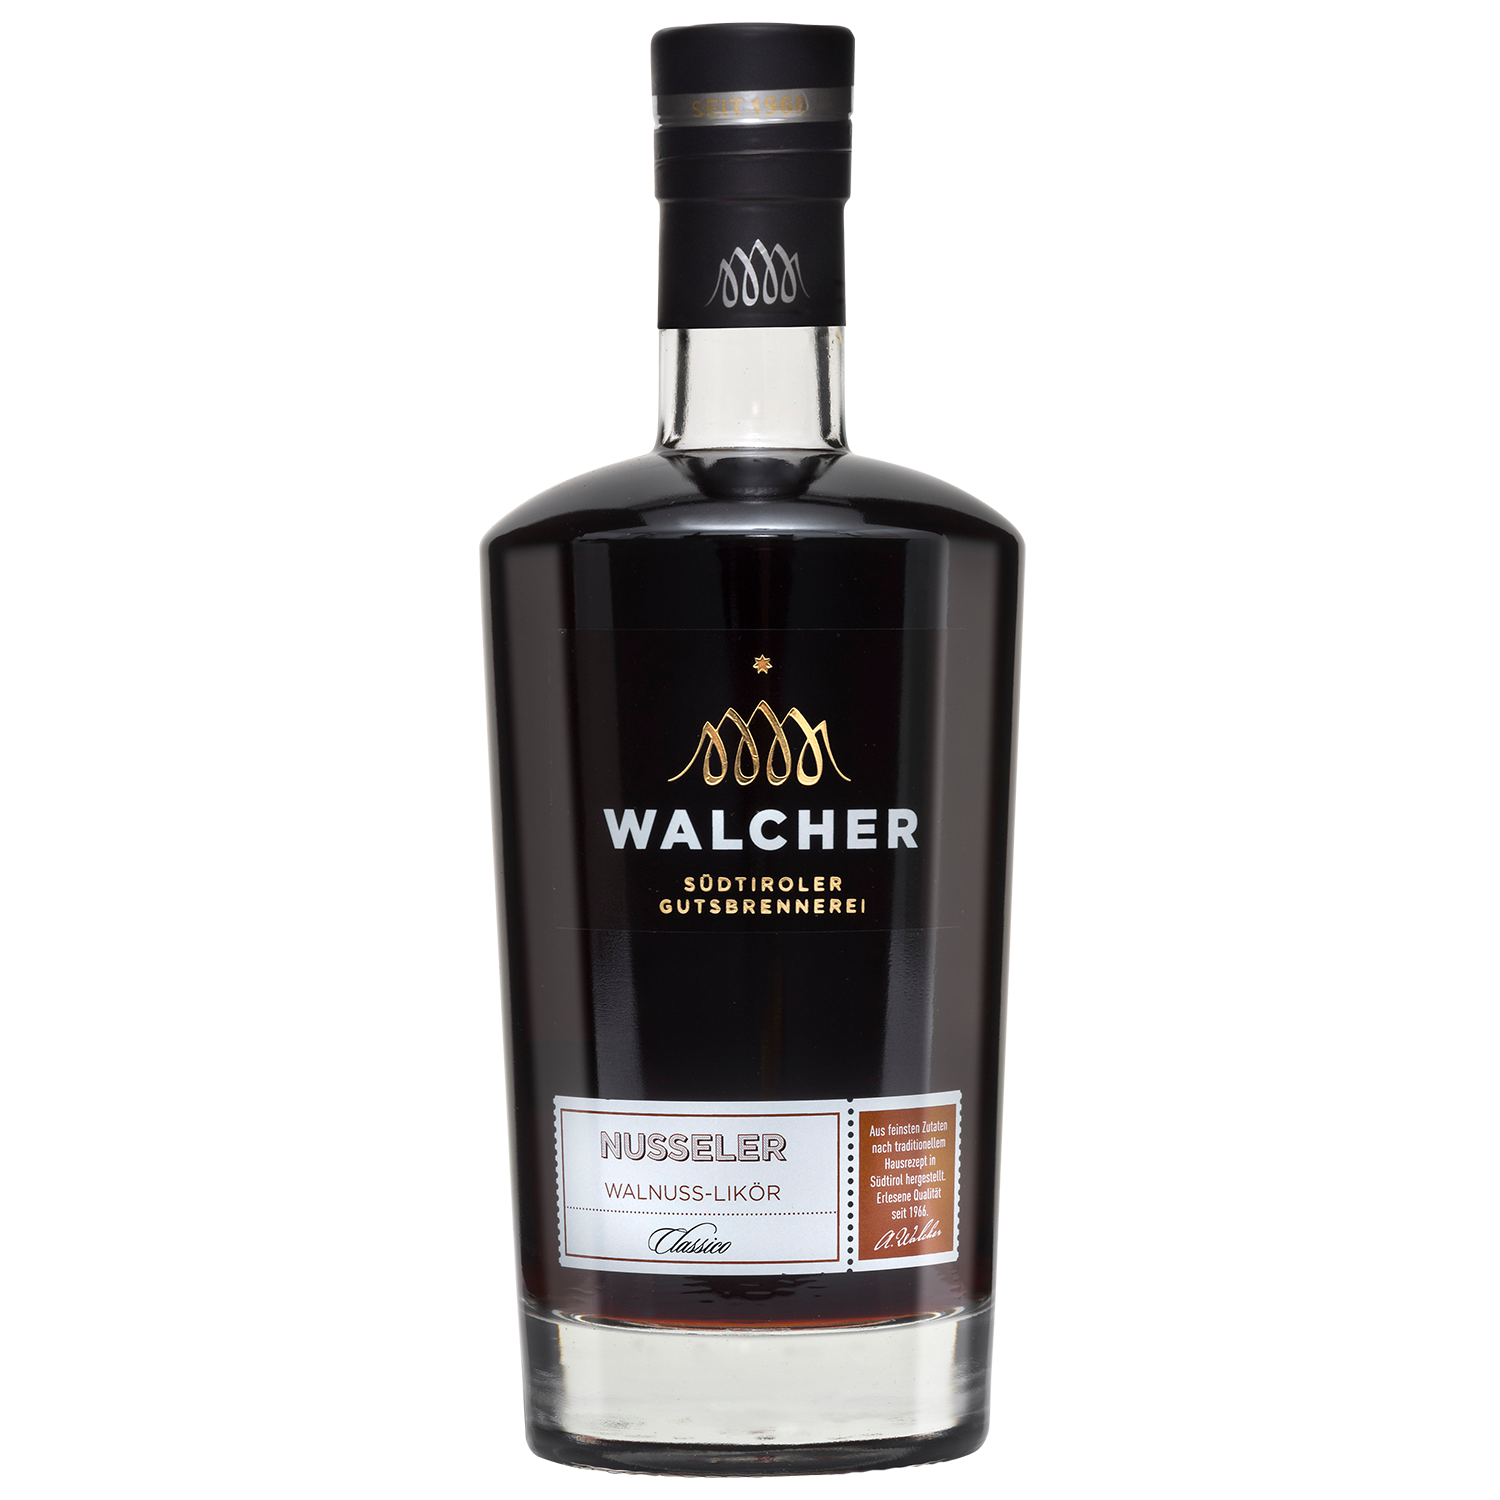 Nusseler Walnuss Likör in 700ml Flasche der Brennerei Walcher